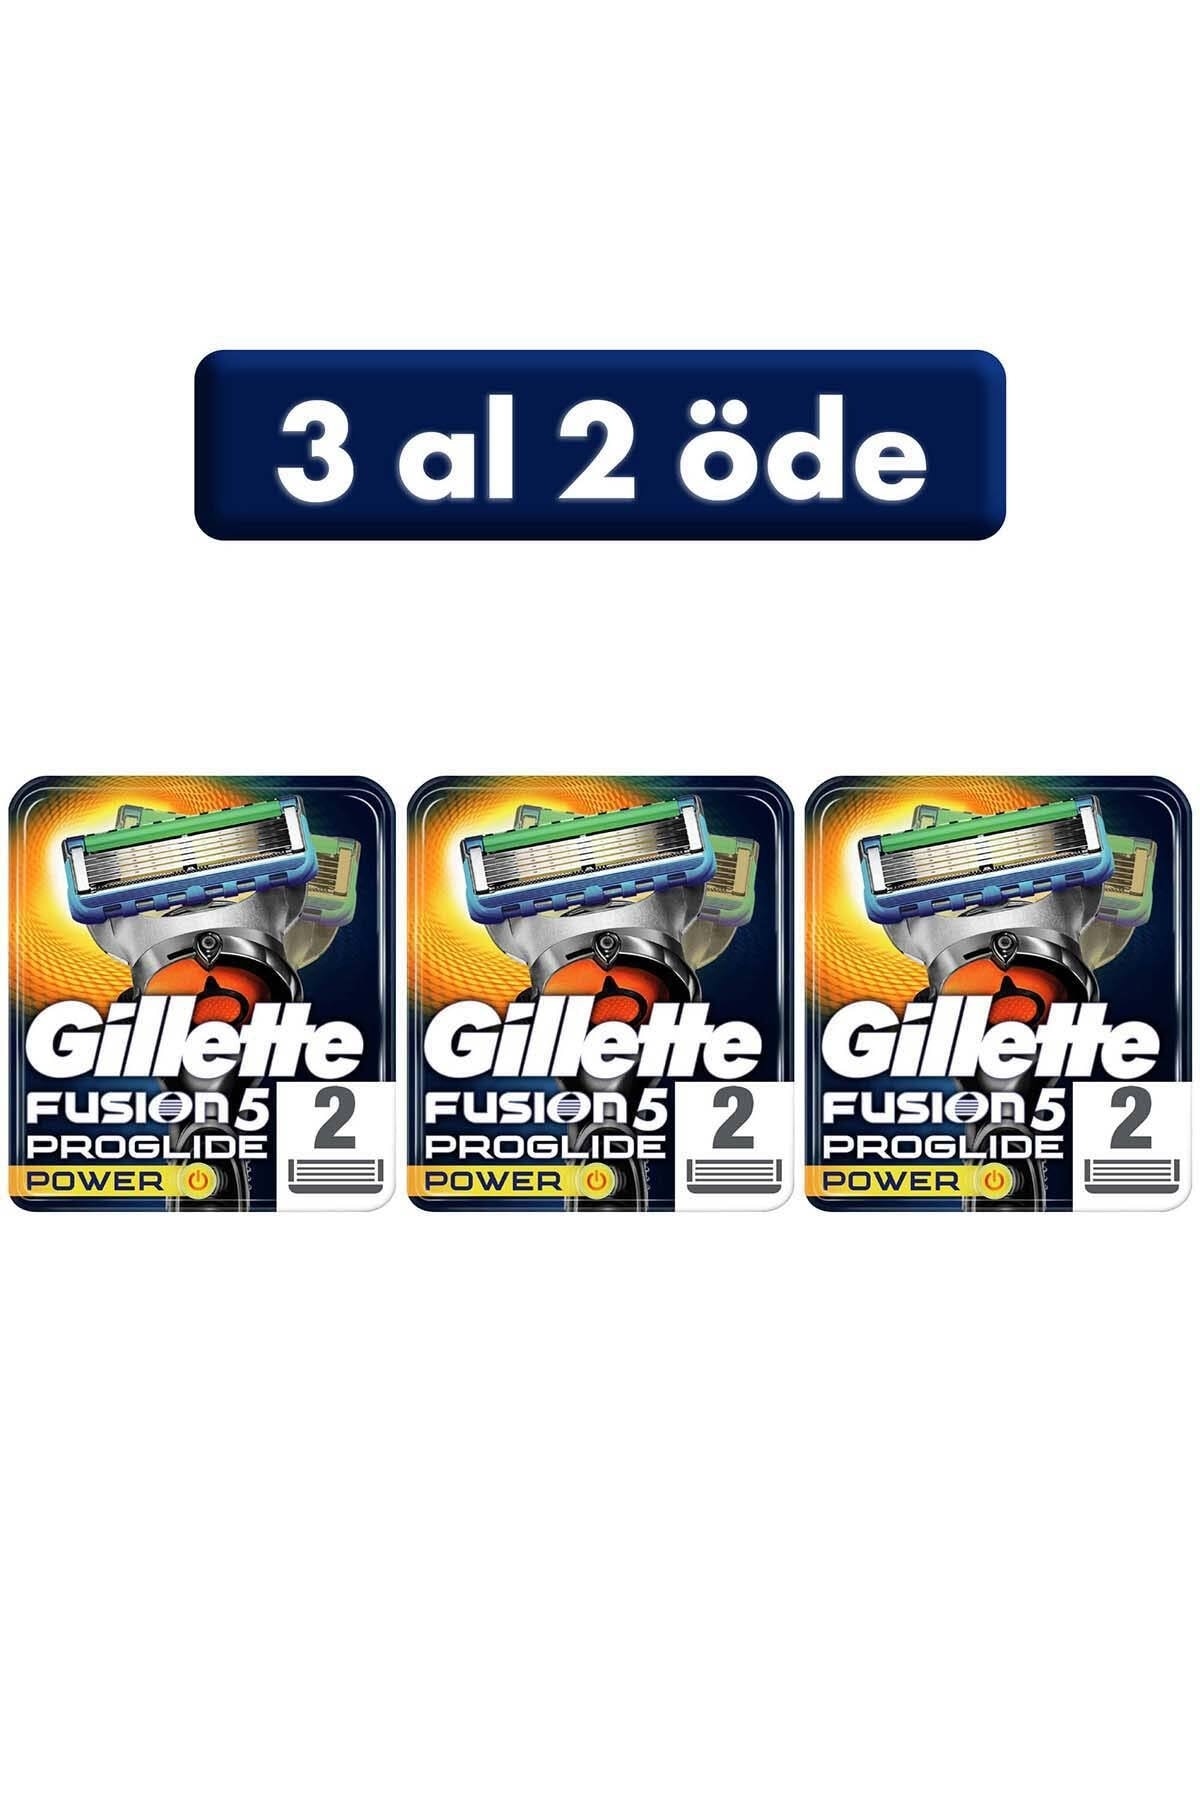 Gillette Fusion Proglide Power Yedek Tıraş Bıçağı 2'li (3 AL 2 ÖDE)